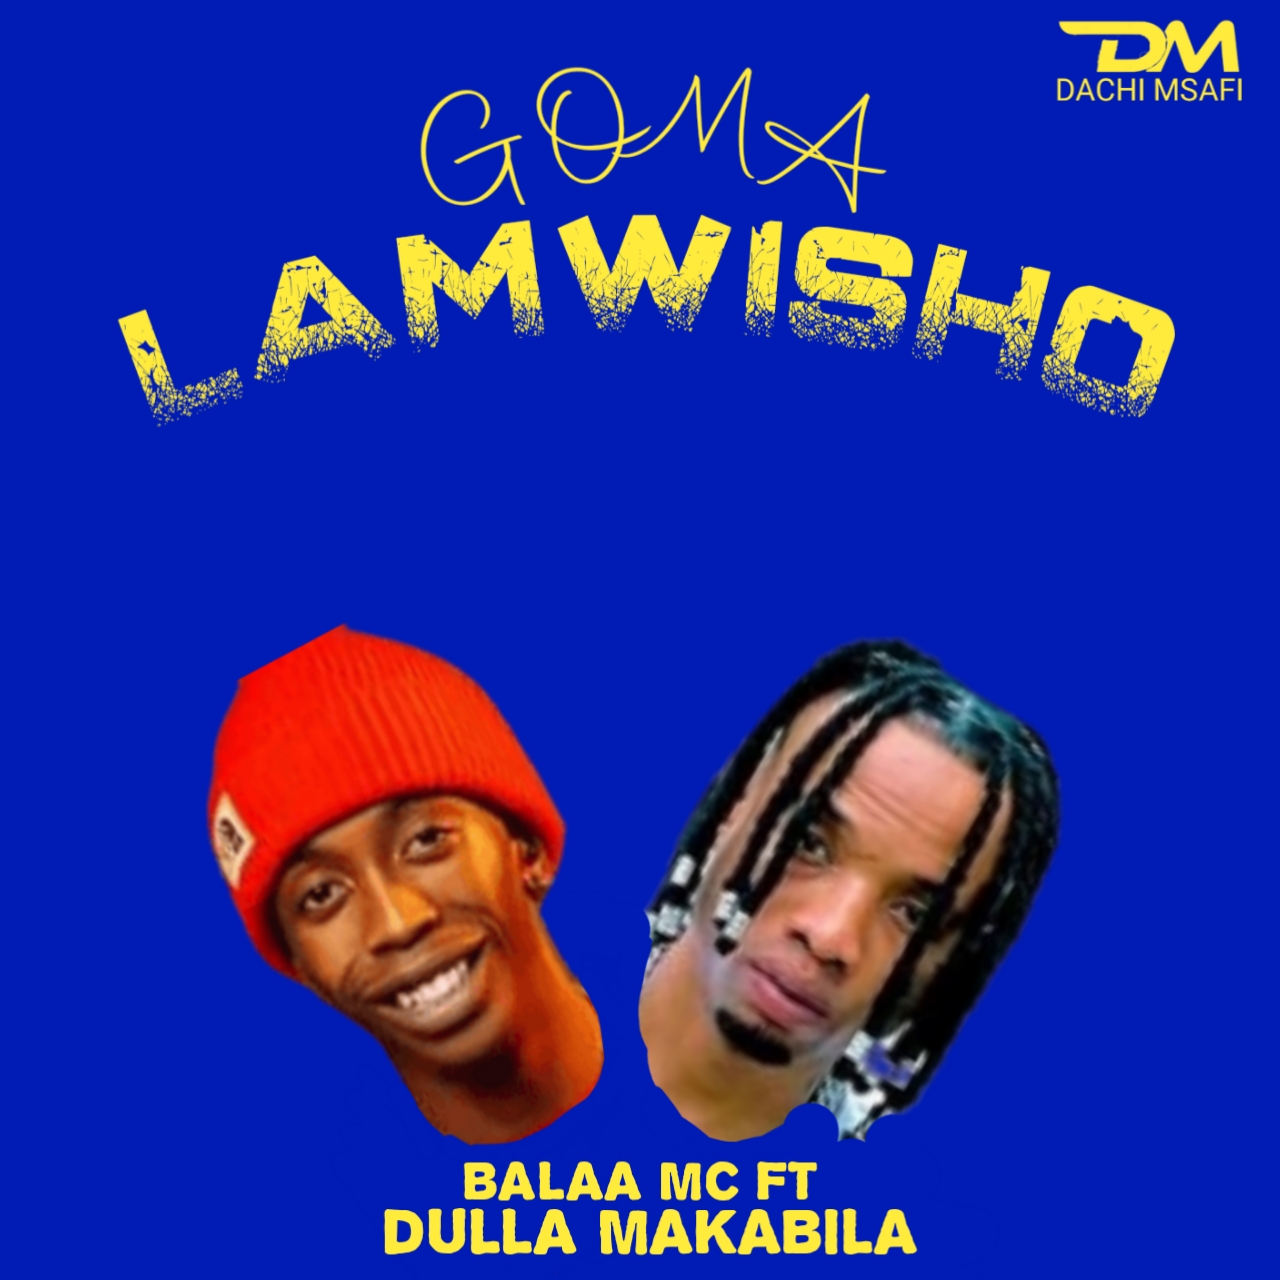 Audio Balaa Mc Ft Dulla Makabila Goma Lamwisho Download Mp3 Dachi Msafi 